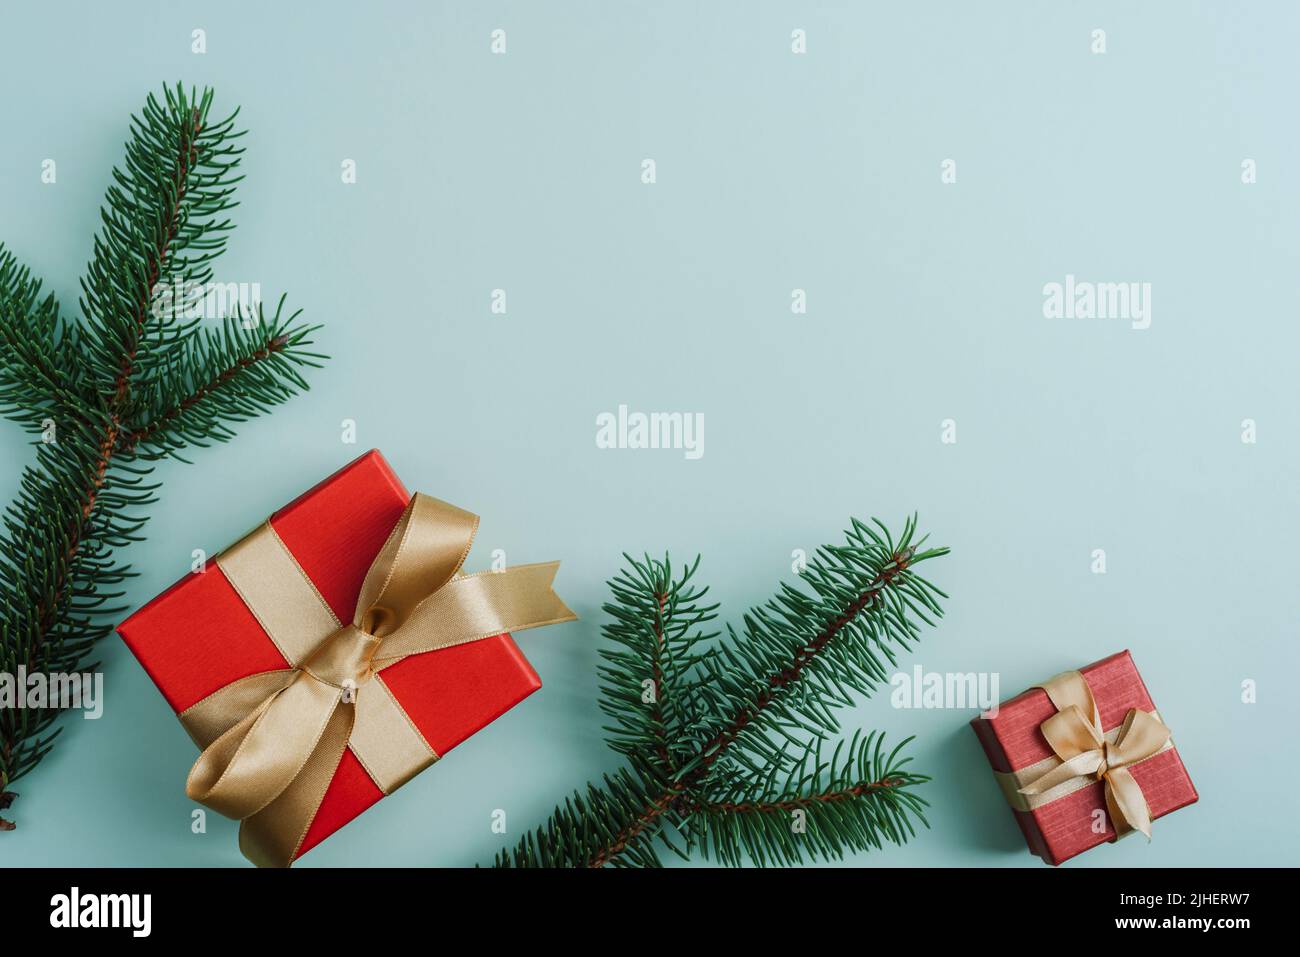 Natale sfondo festivo. Scatole regalo e rami di abete su sfondo verde chiaro. Vista dall'alto, disposizione piatta, spazio di copia. Foto Stock